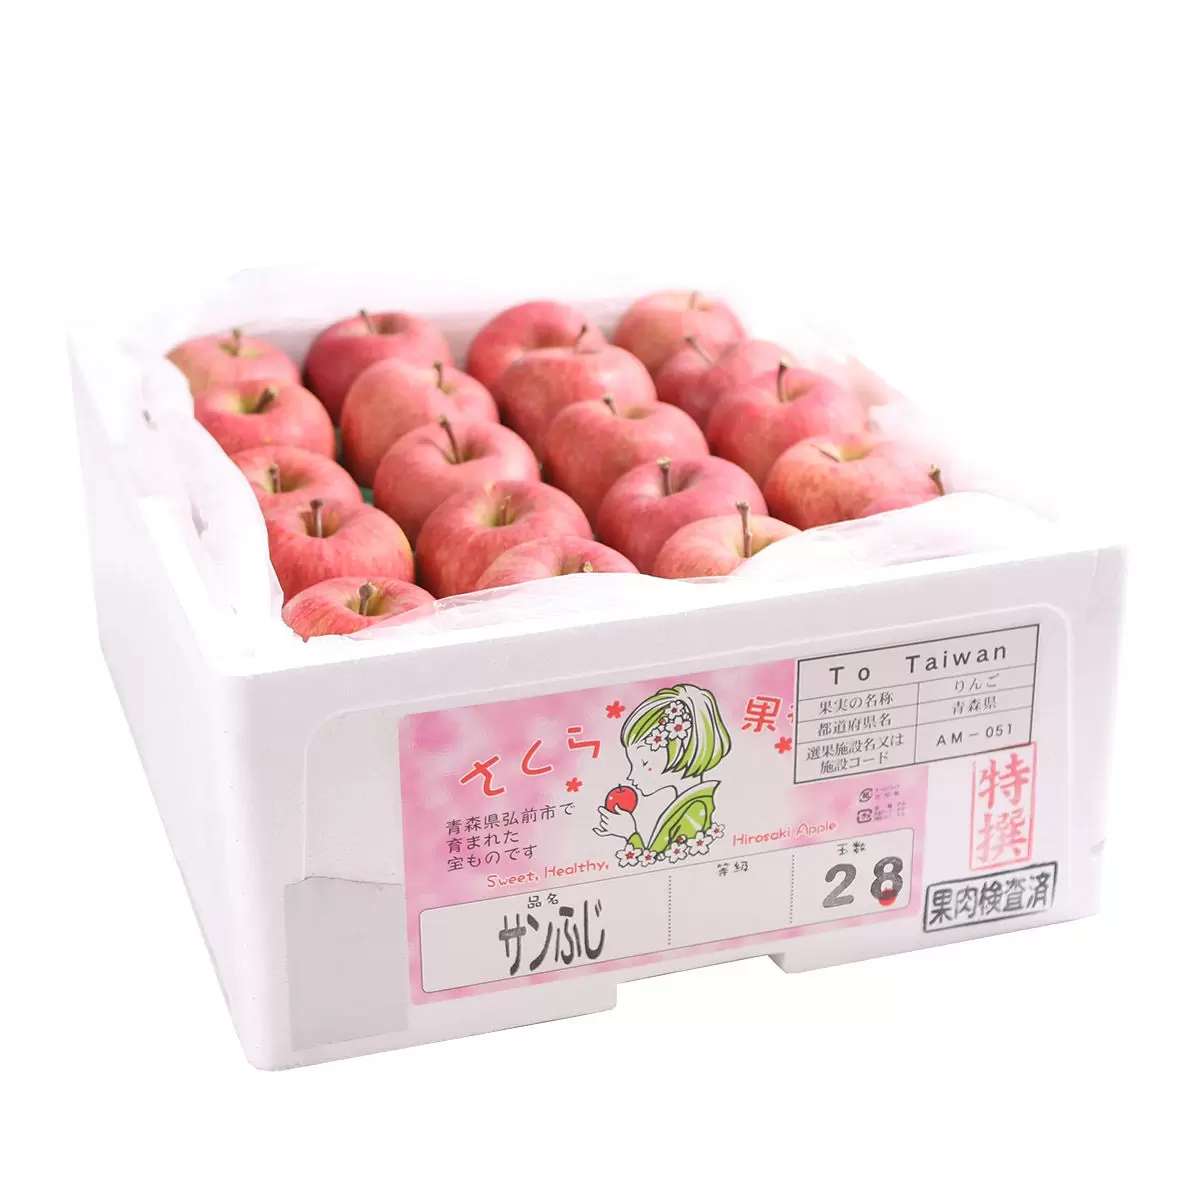 日本陽光富士蘋果 10公斤